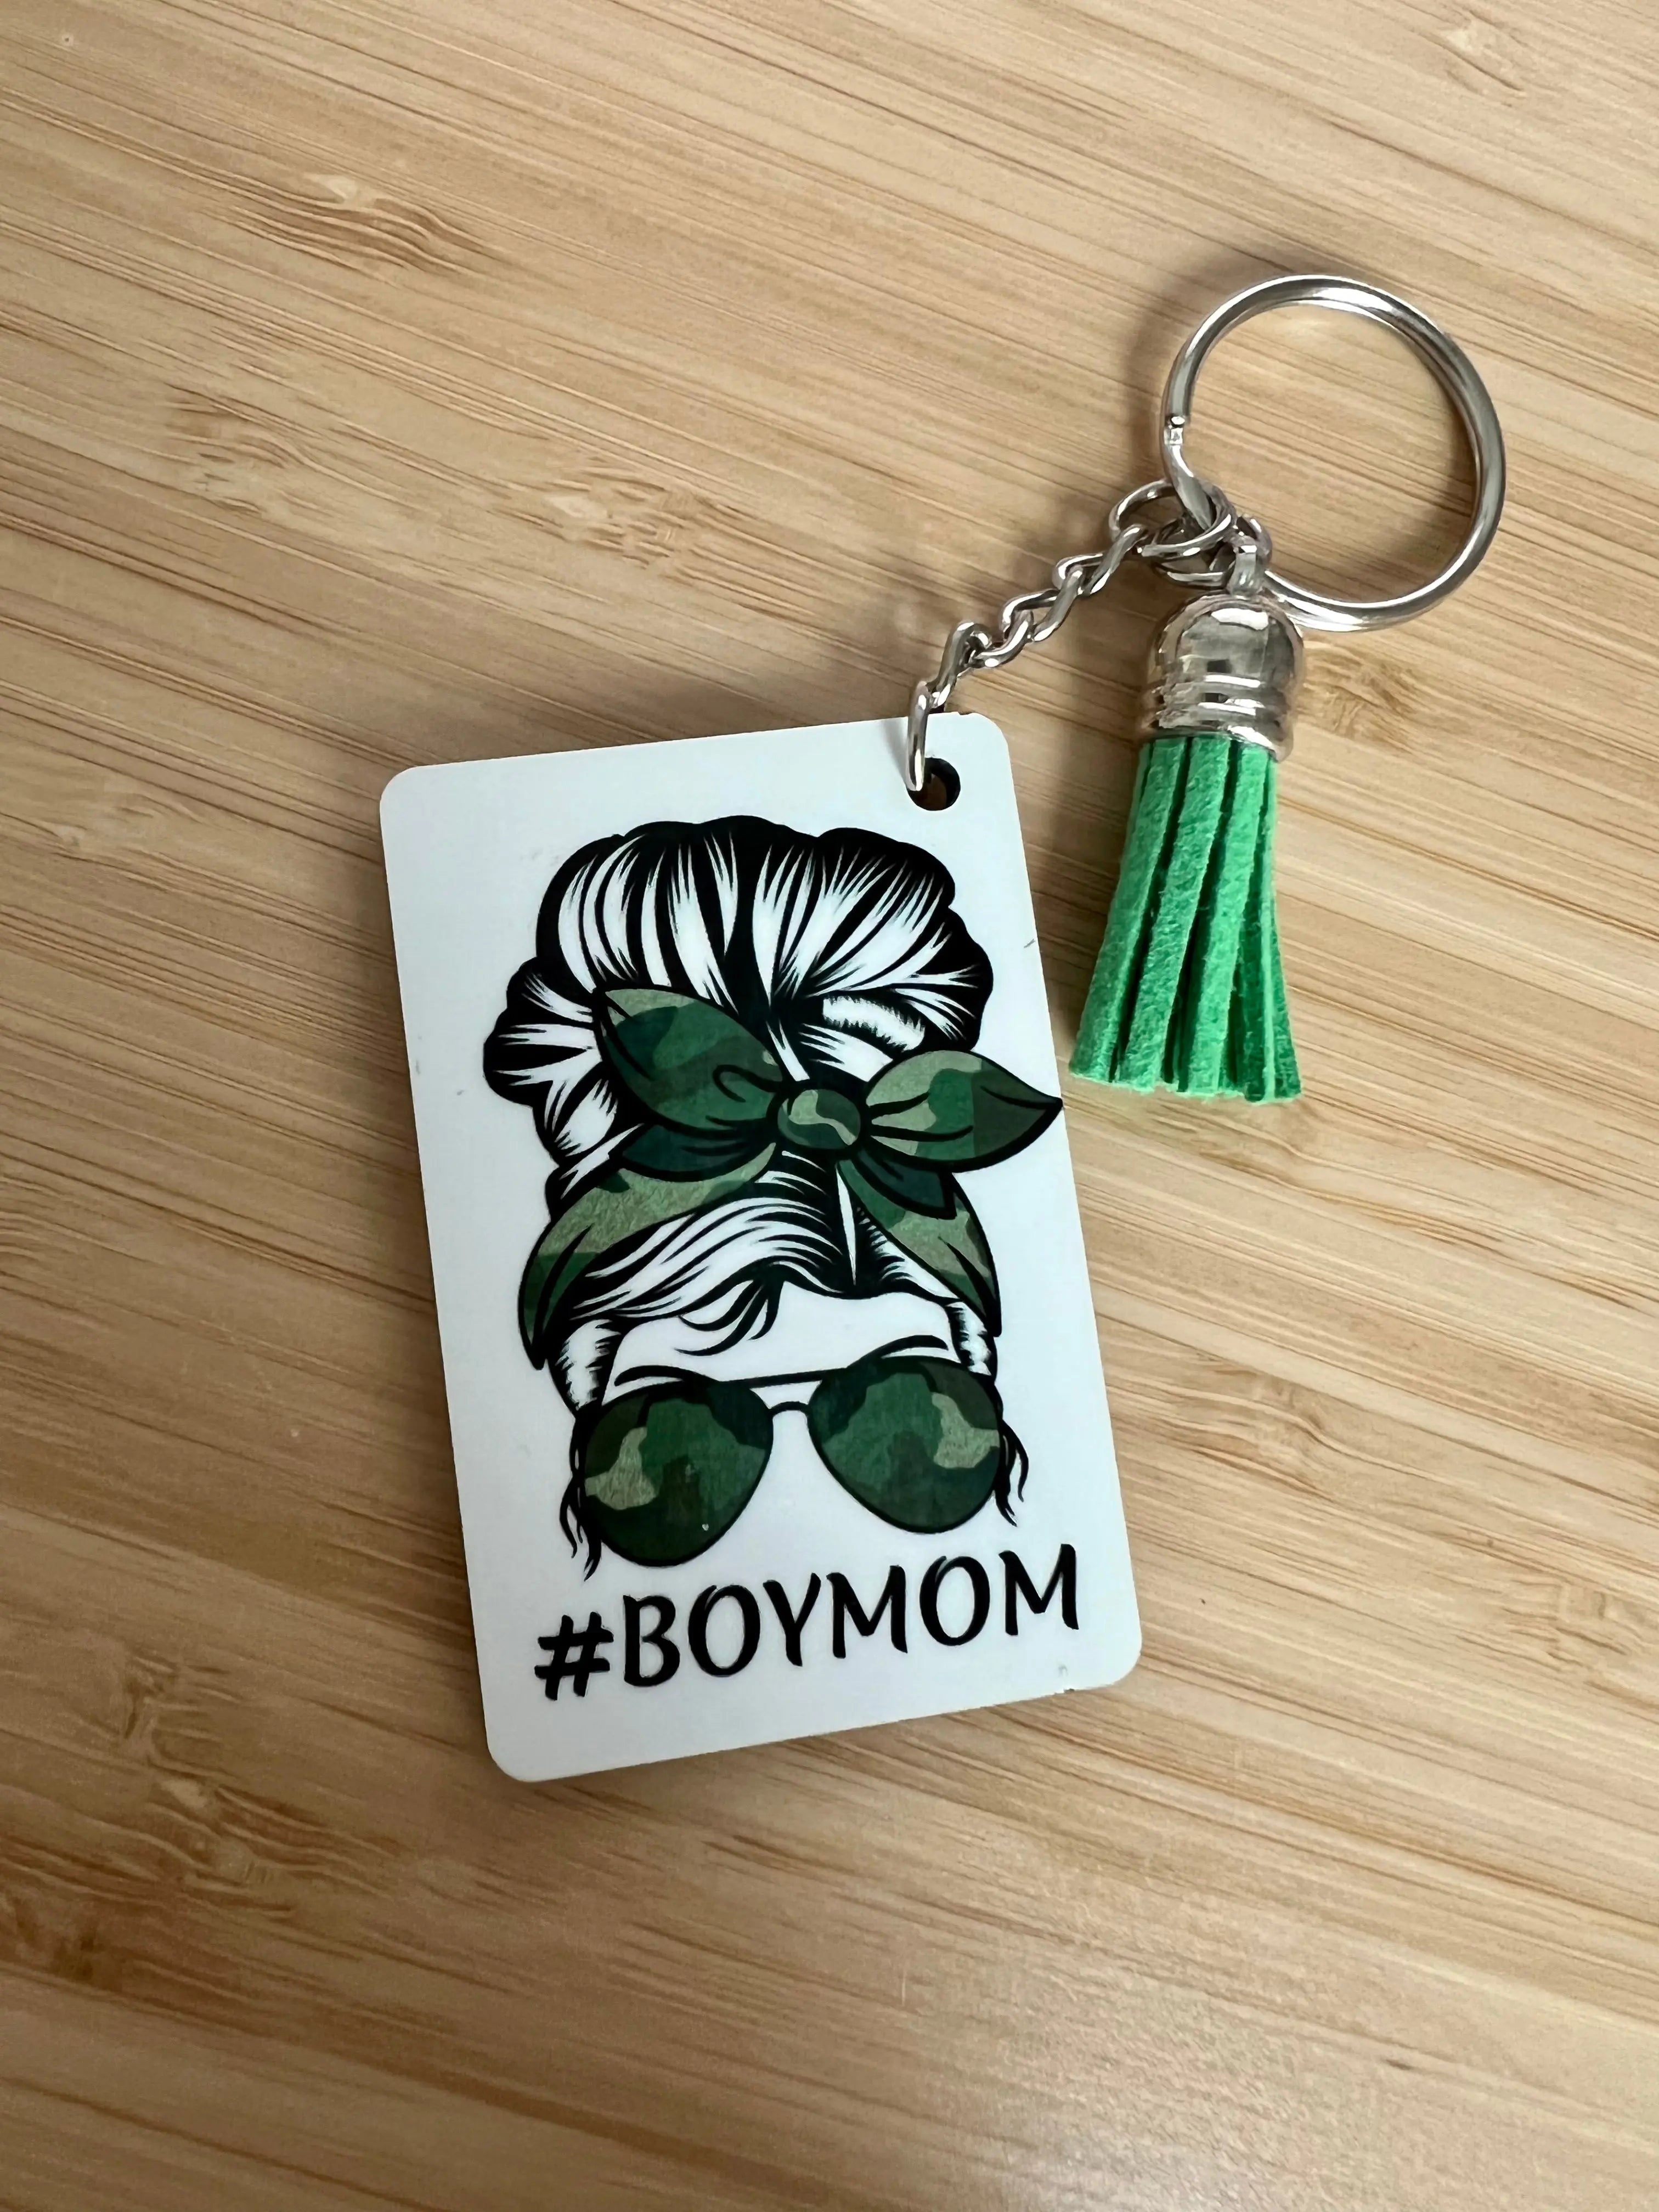 Boy Mom Keychain - Southern Designs